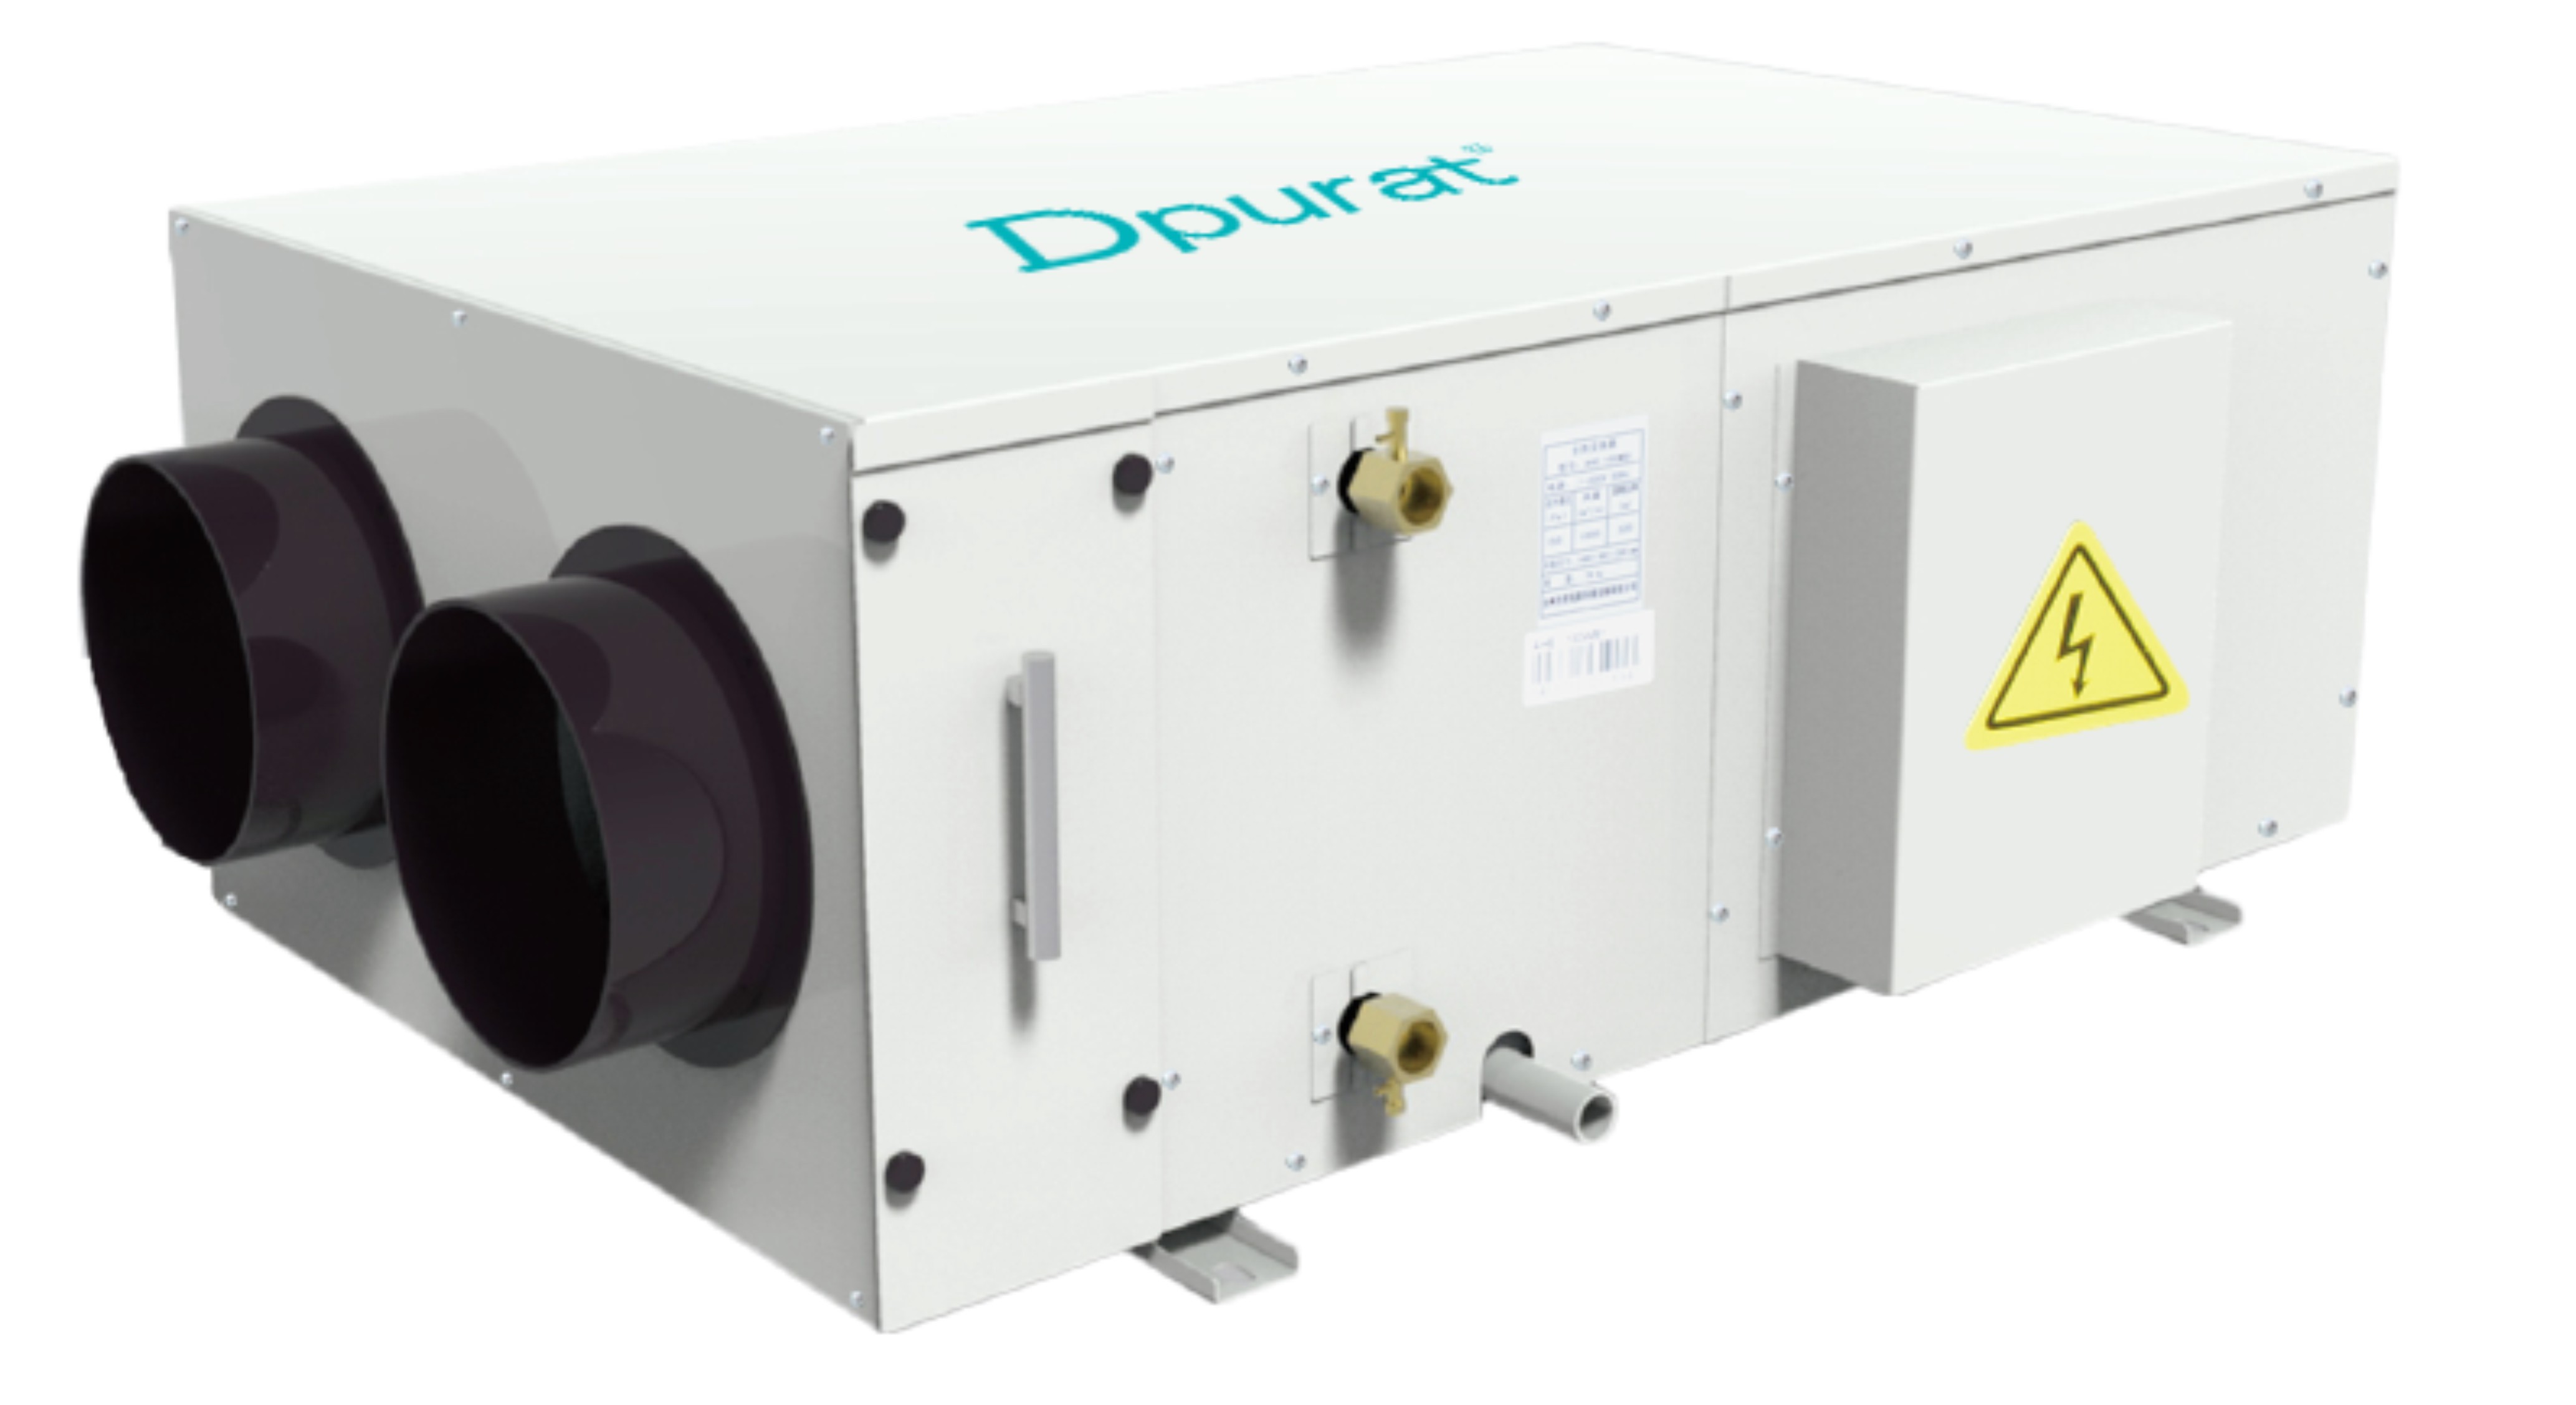 Deshumidificador de ventilación hospitalaria con filtro H13 de 300 cfm